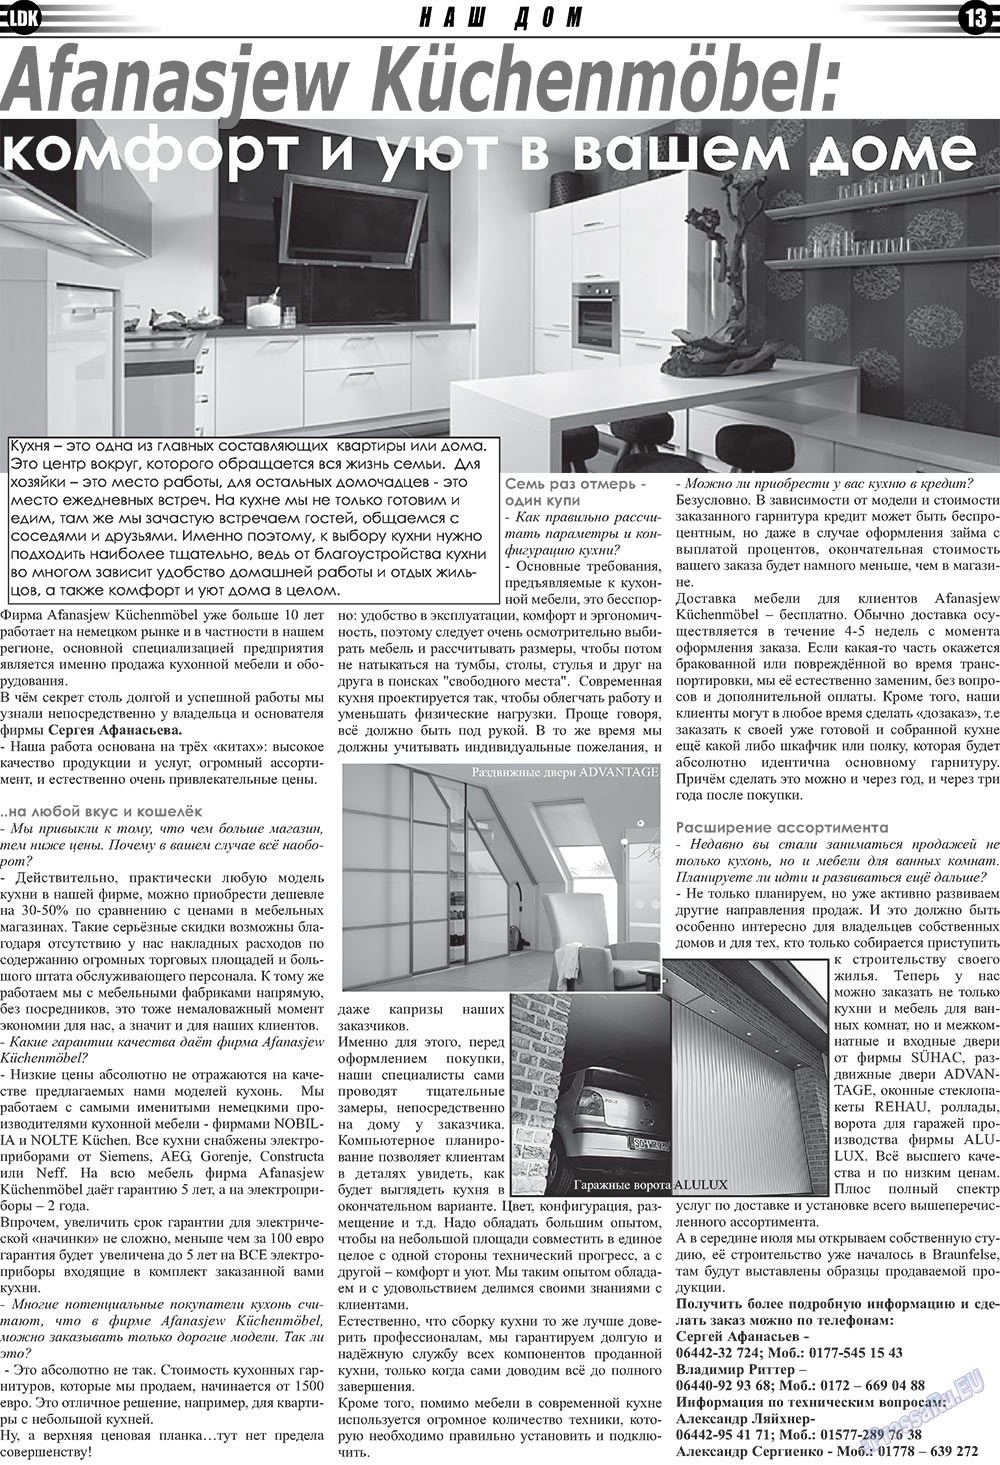 LDK по-русски (газета). 2010 год, номер 3, стр. 13